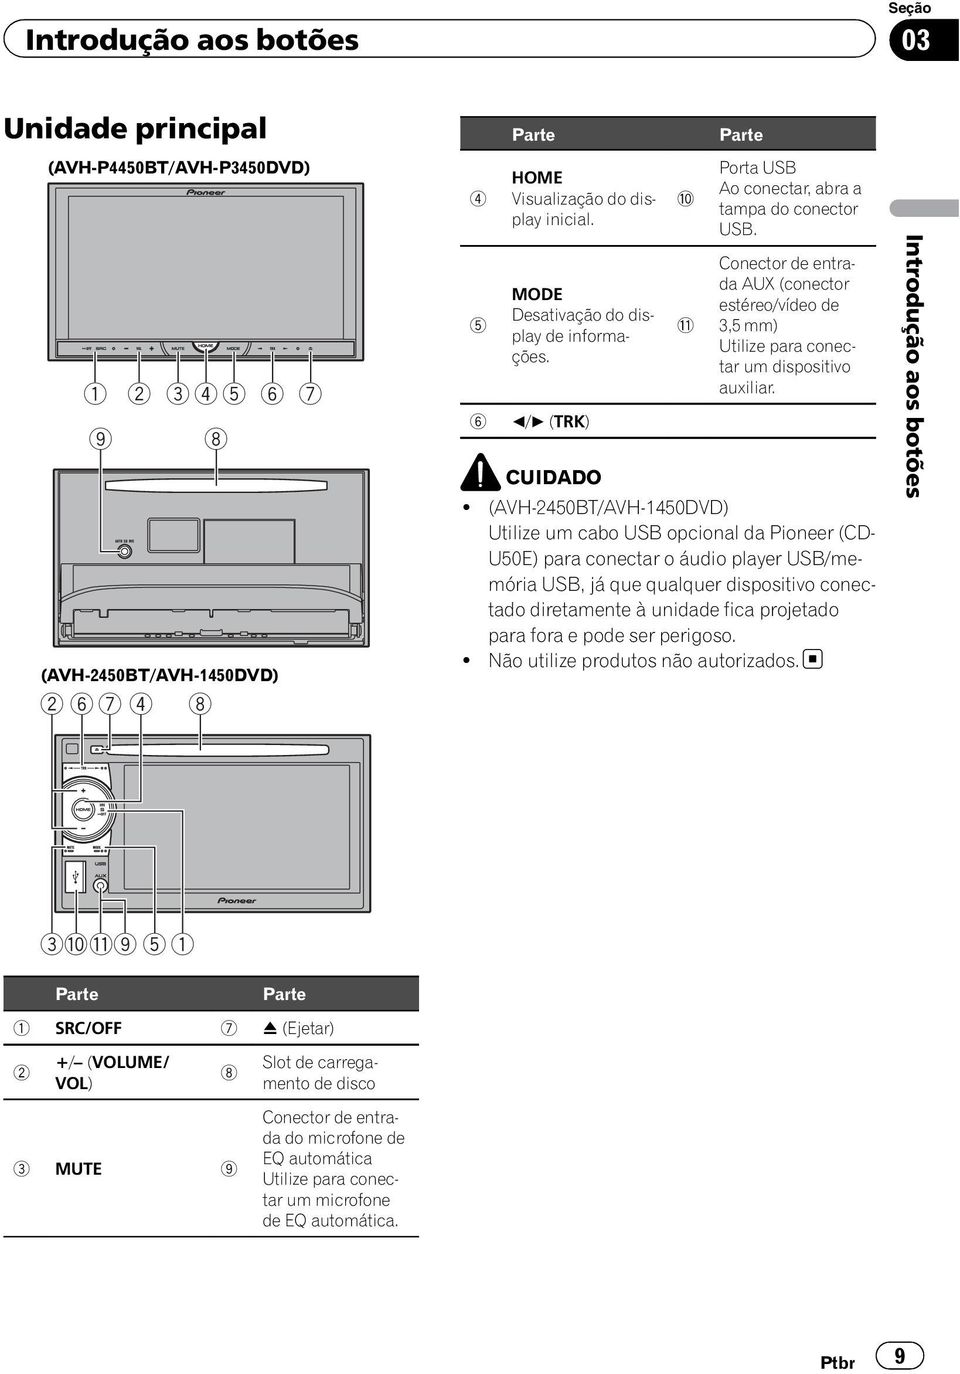 Conector de entrada AUX (conector estéreo/vídeo de 3,5 mm) Utilize para conectar um dispositivo auxiliar. CUIDADO!